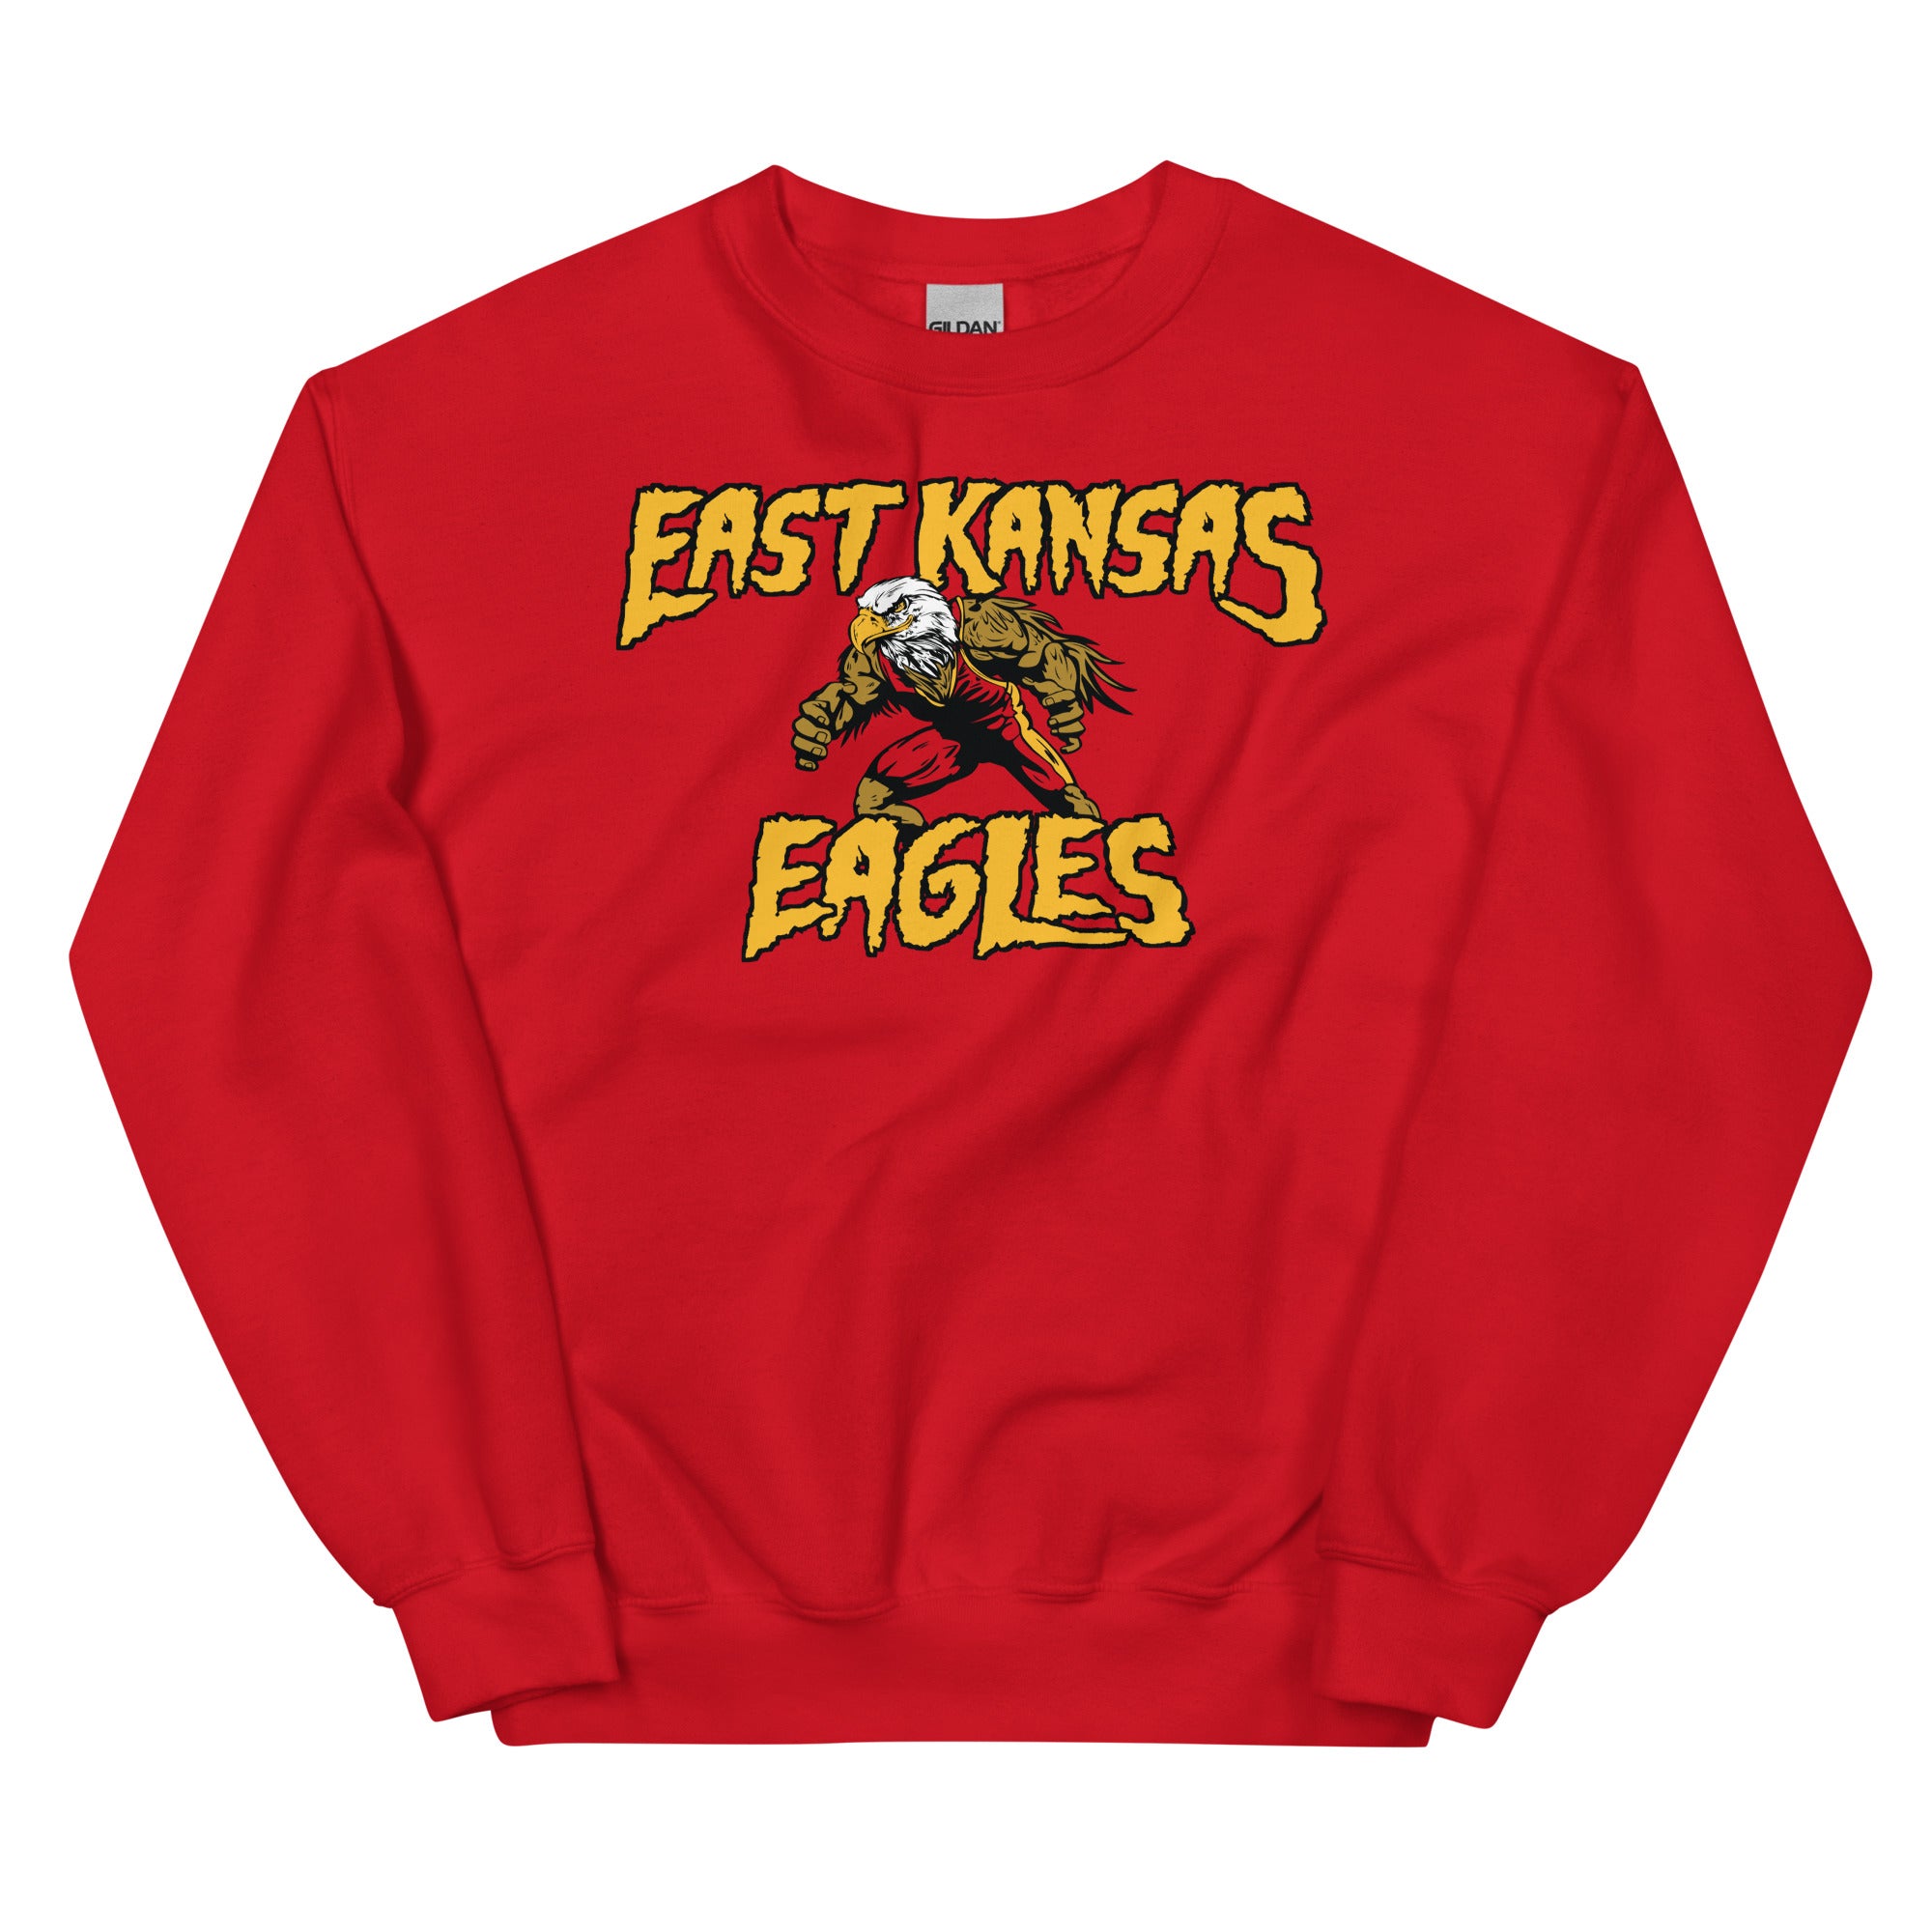 East Kansas Eagles Unisex Sweatshirt